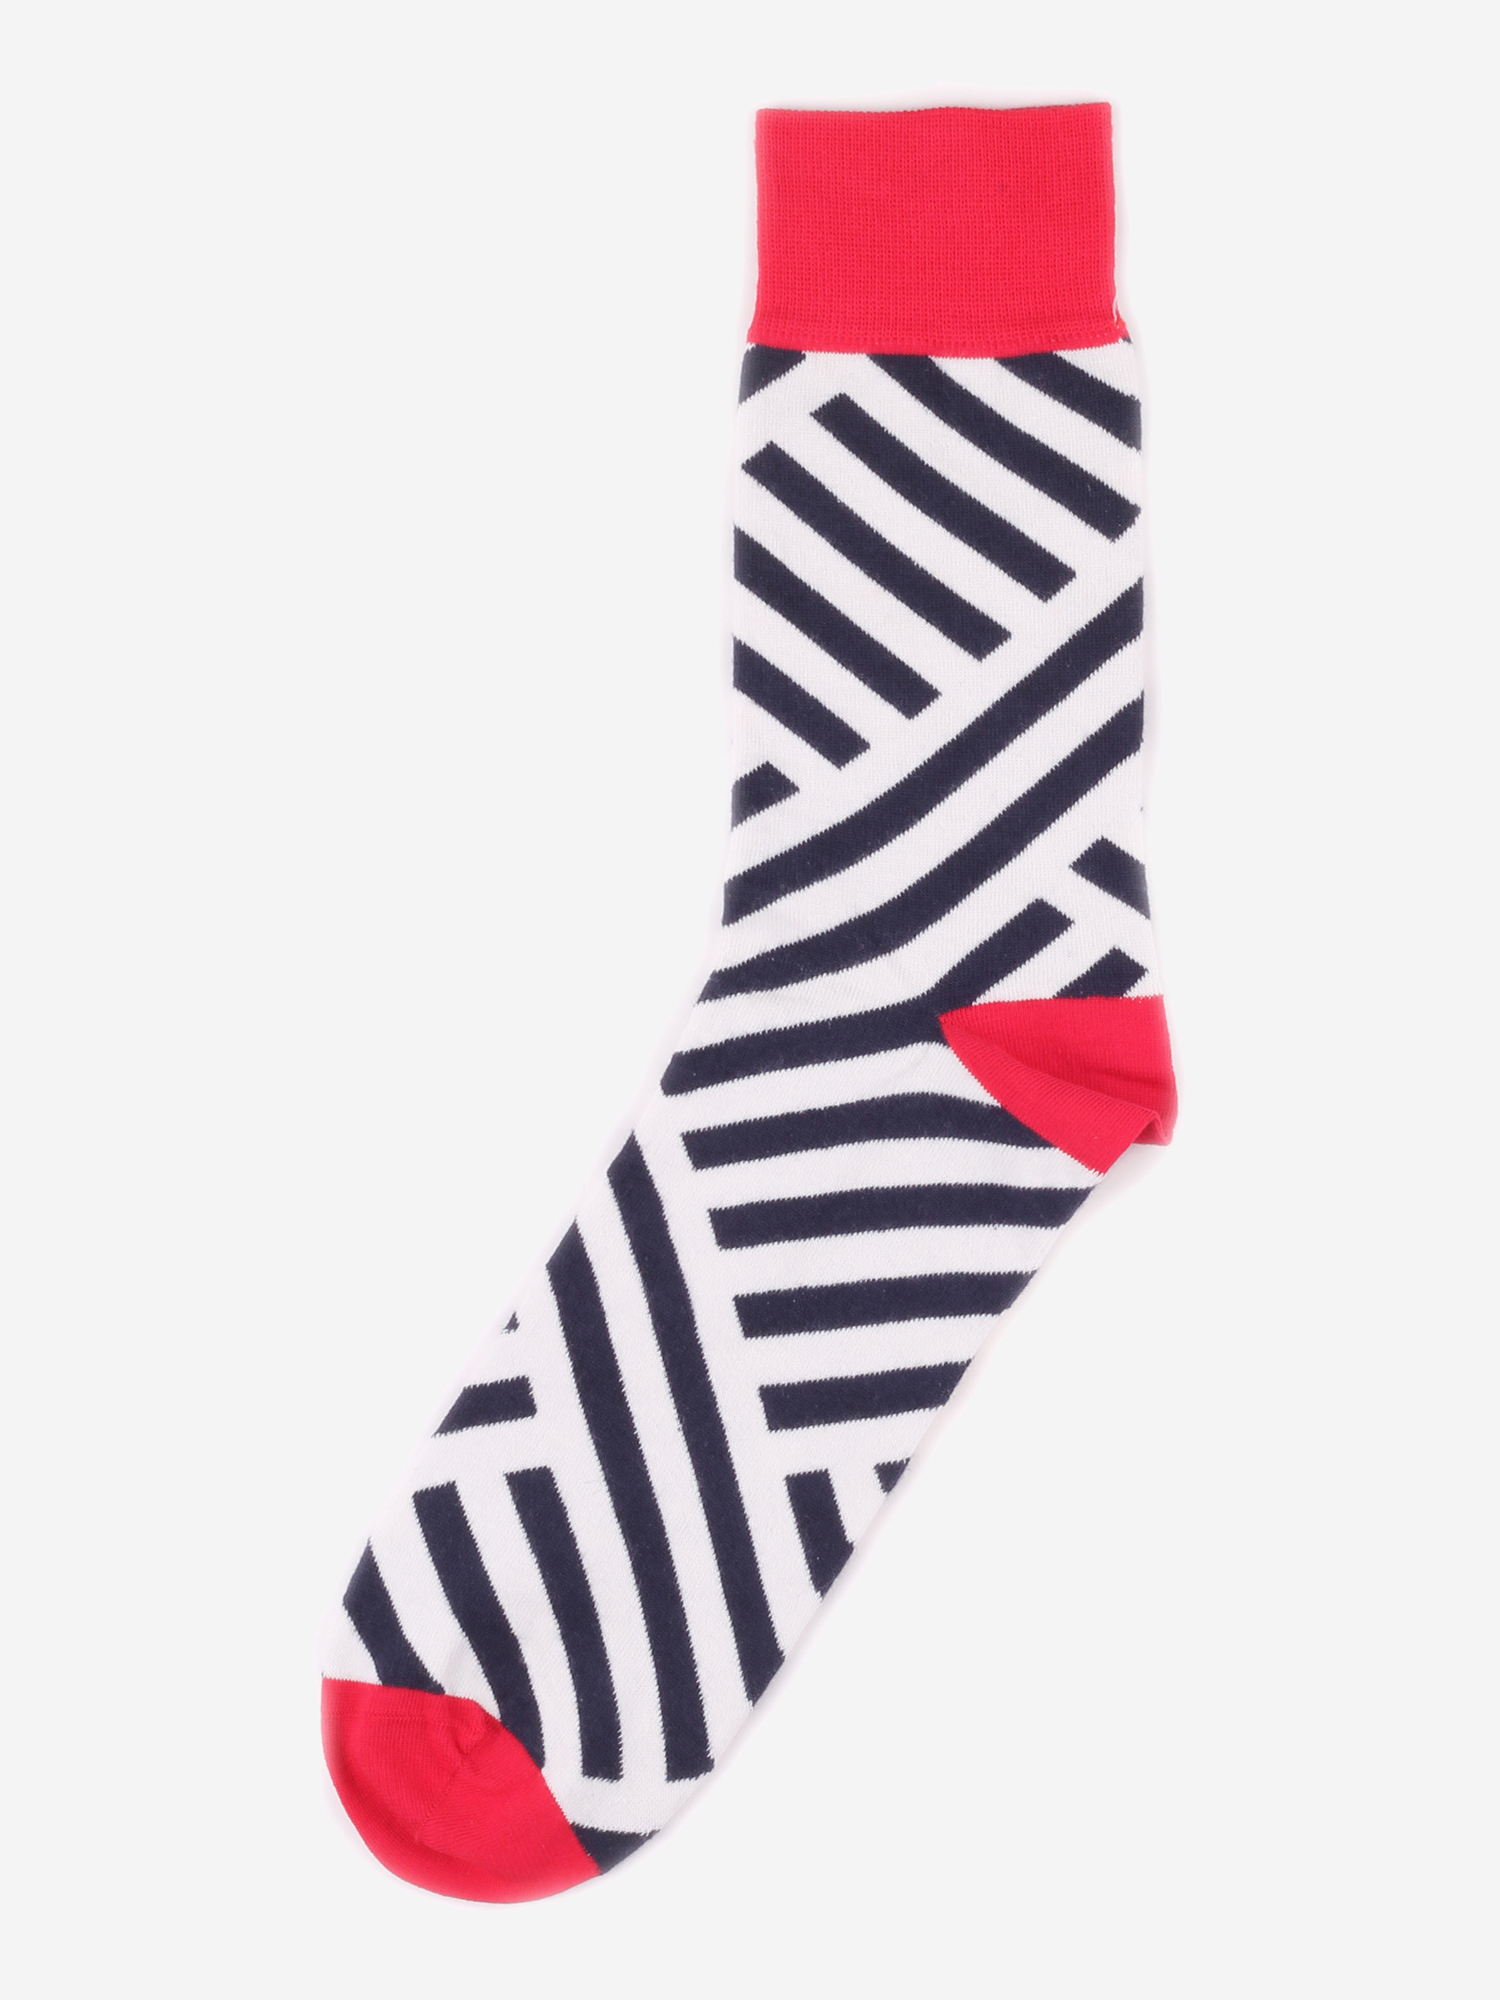 Дизайнерские носки Burning Heels - Diagonal Stripes - Red/Black, Красный шорты женские adidas 3 stripes красный